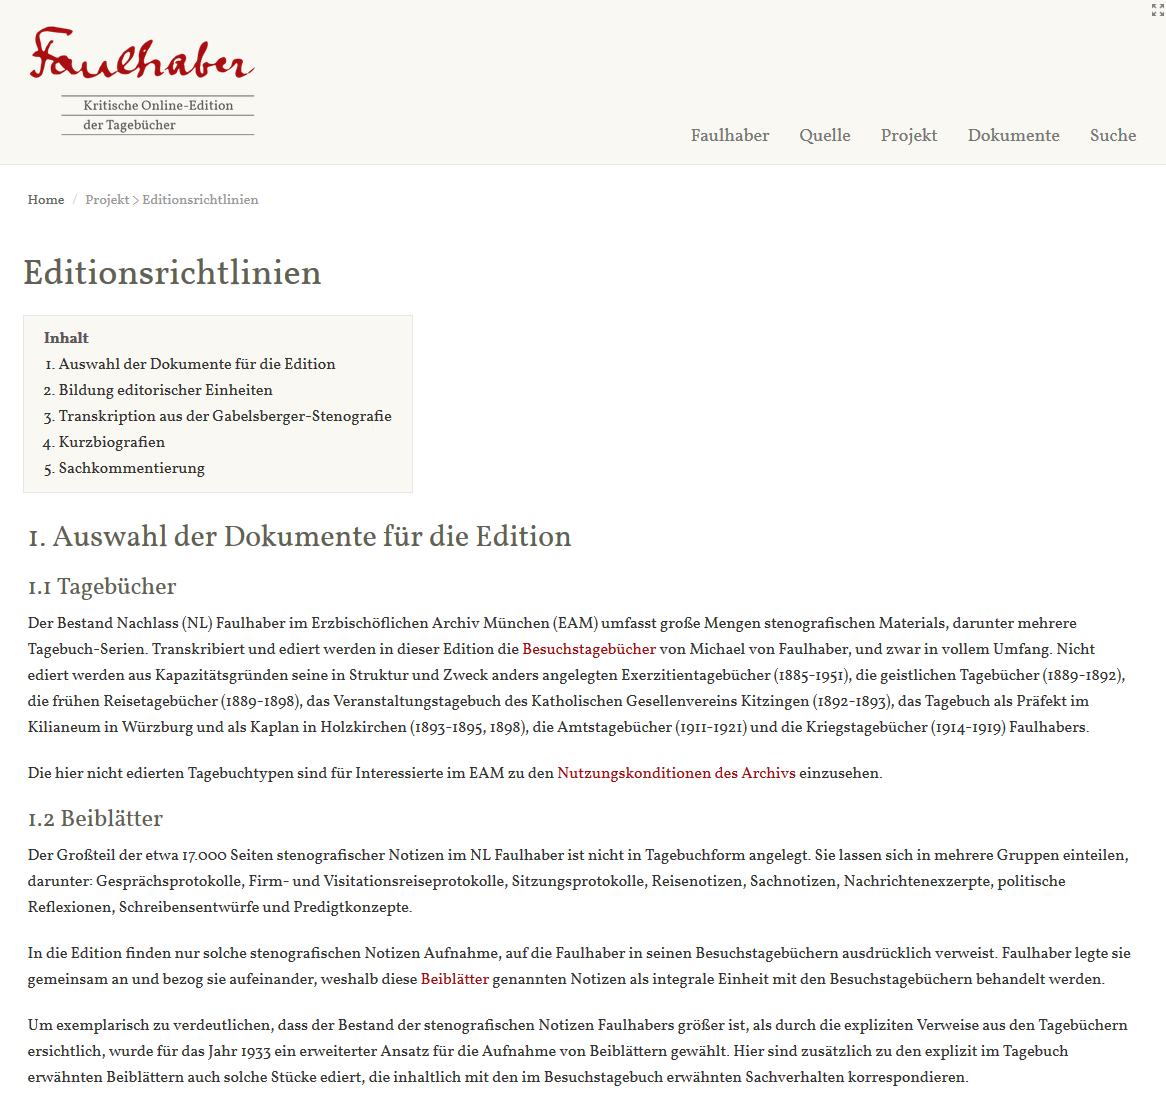 Editionsrichtlinien der Faulhaber-Edition